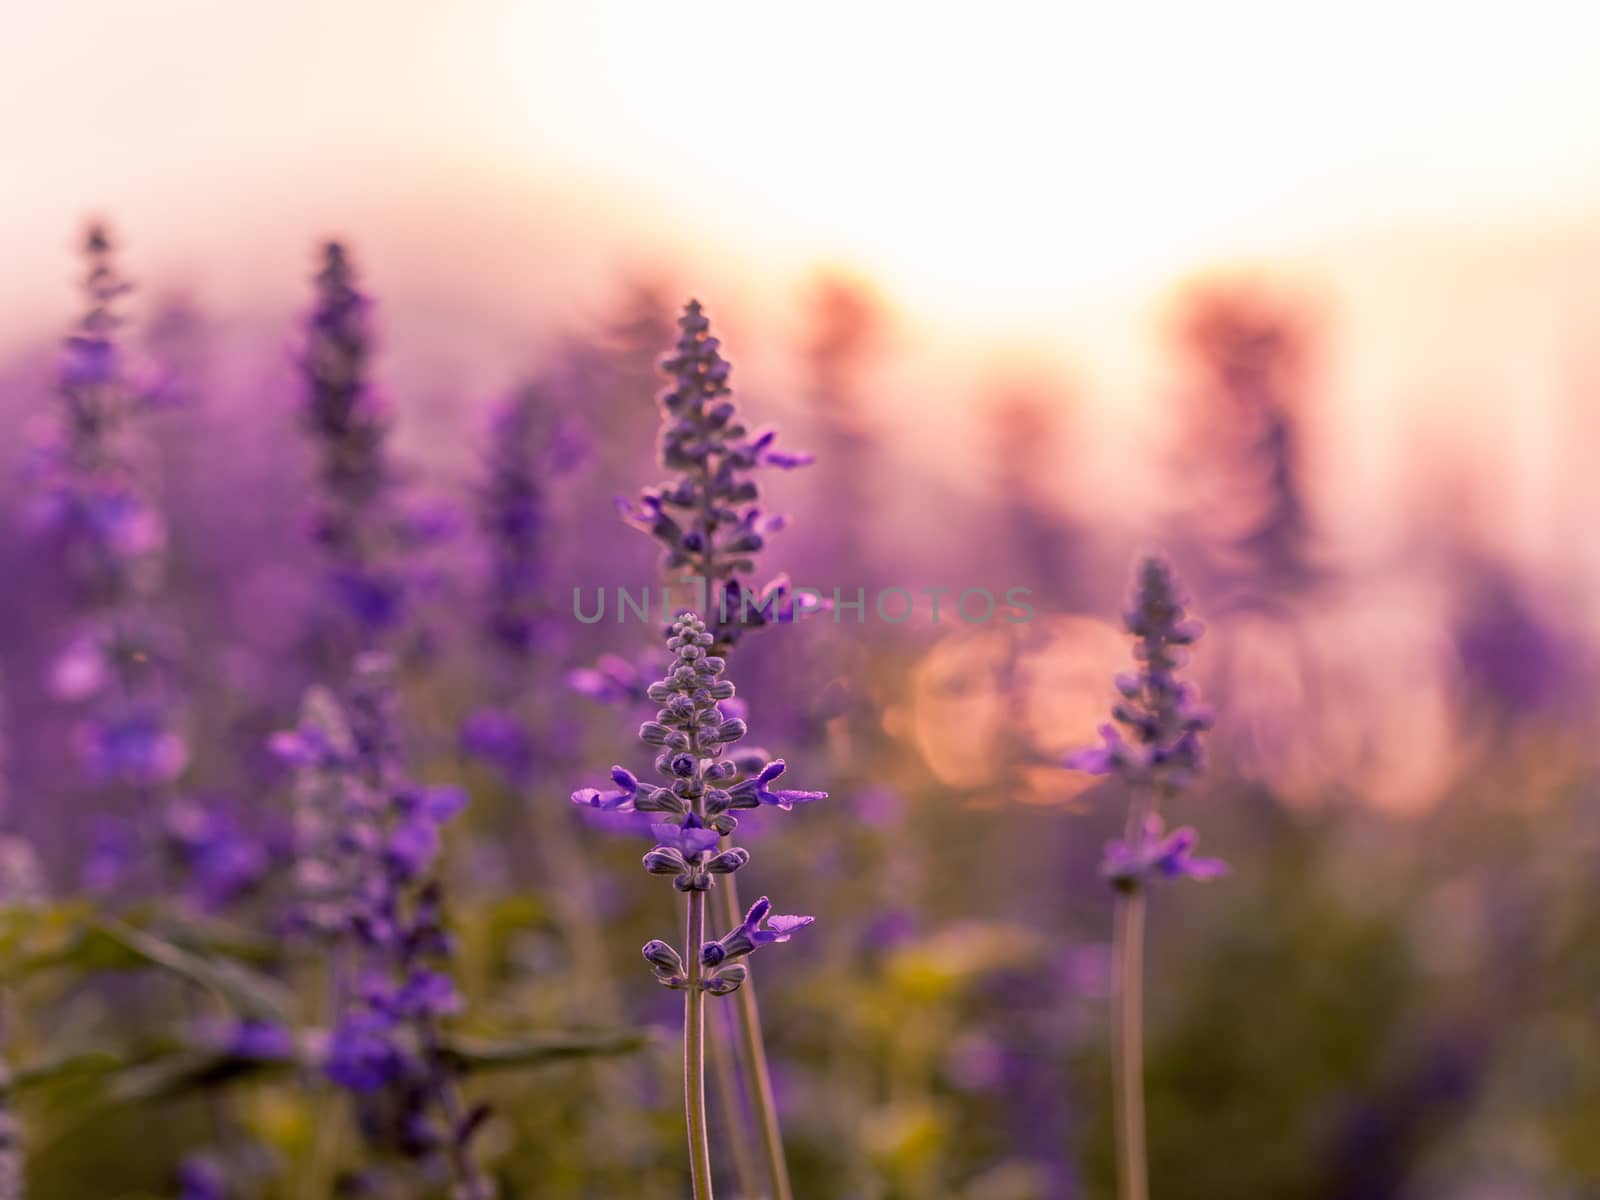 Violet lavender field background on sunset.